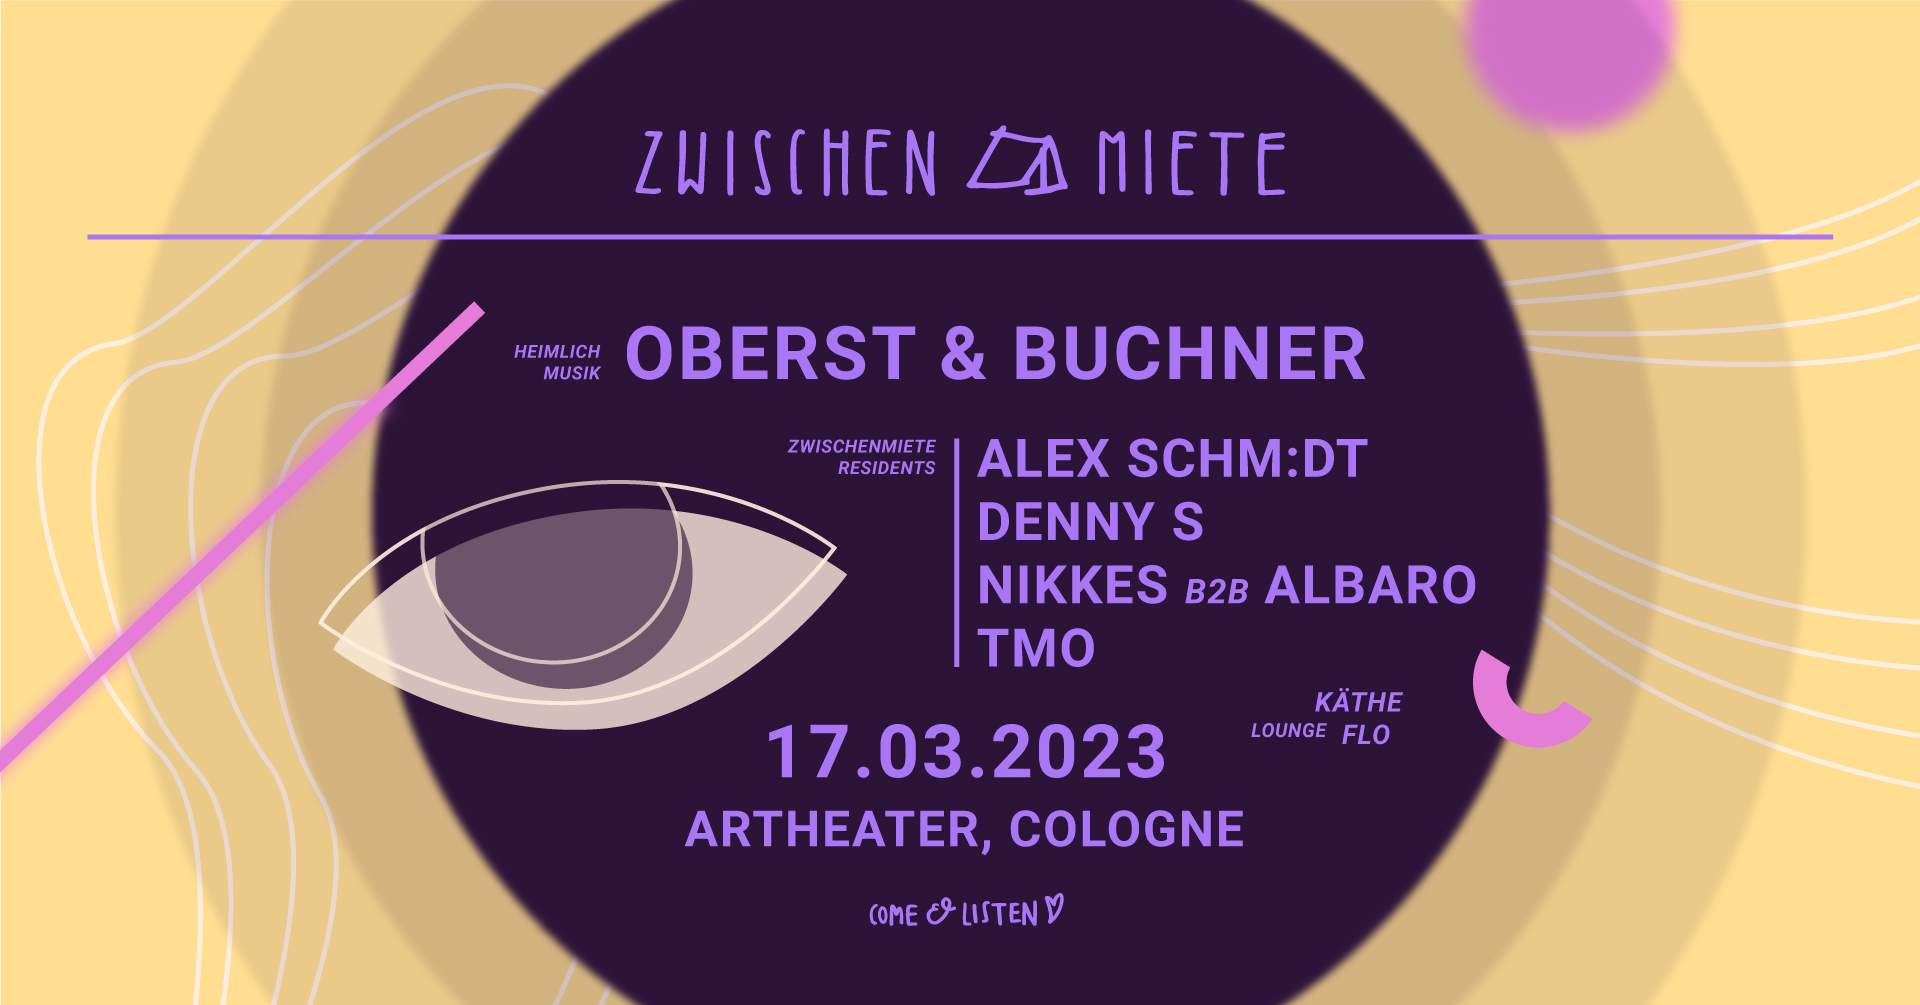 Zwischenmiete Club Edition with Oberst & Buchner - Página trasera